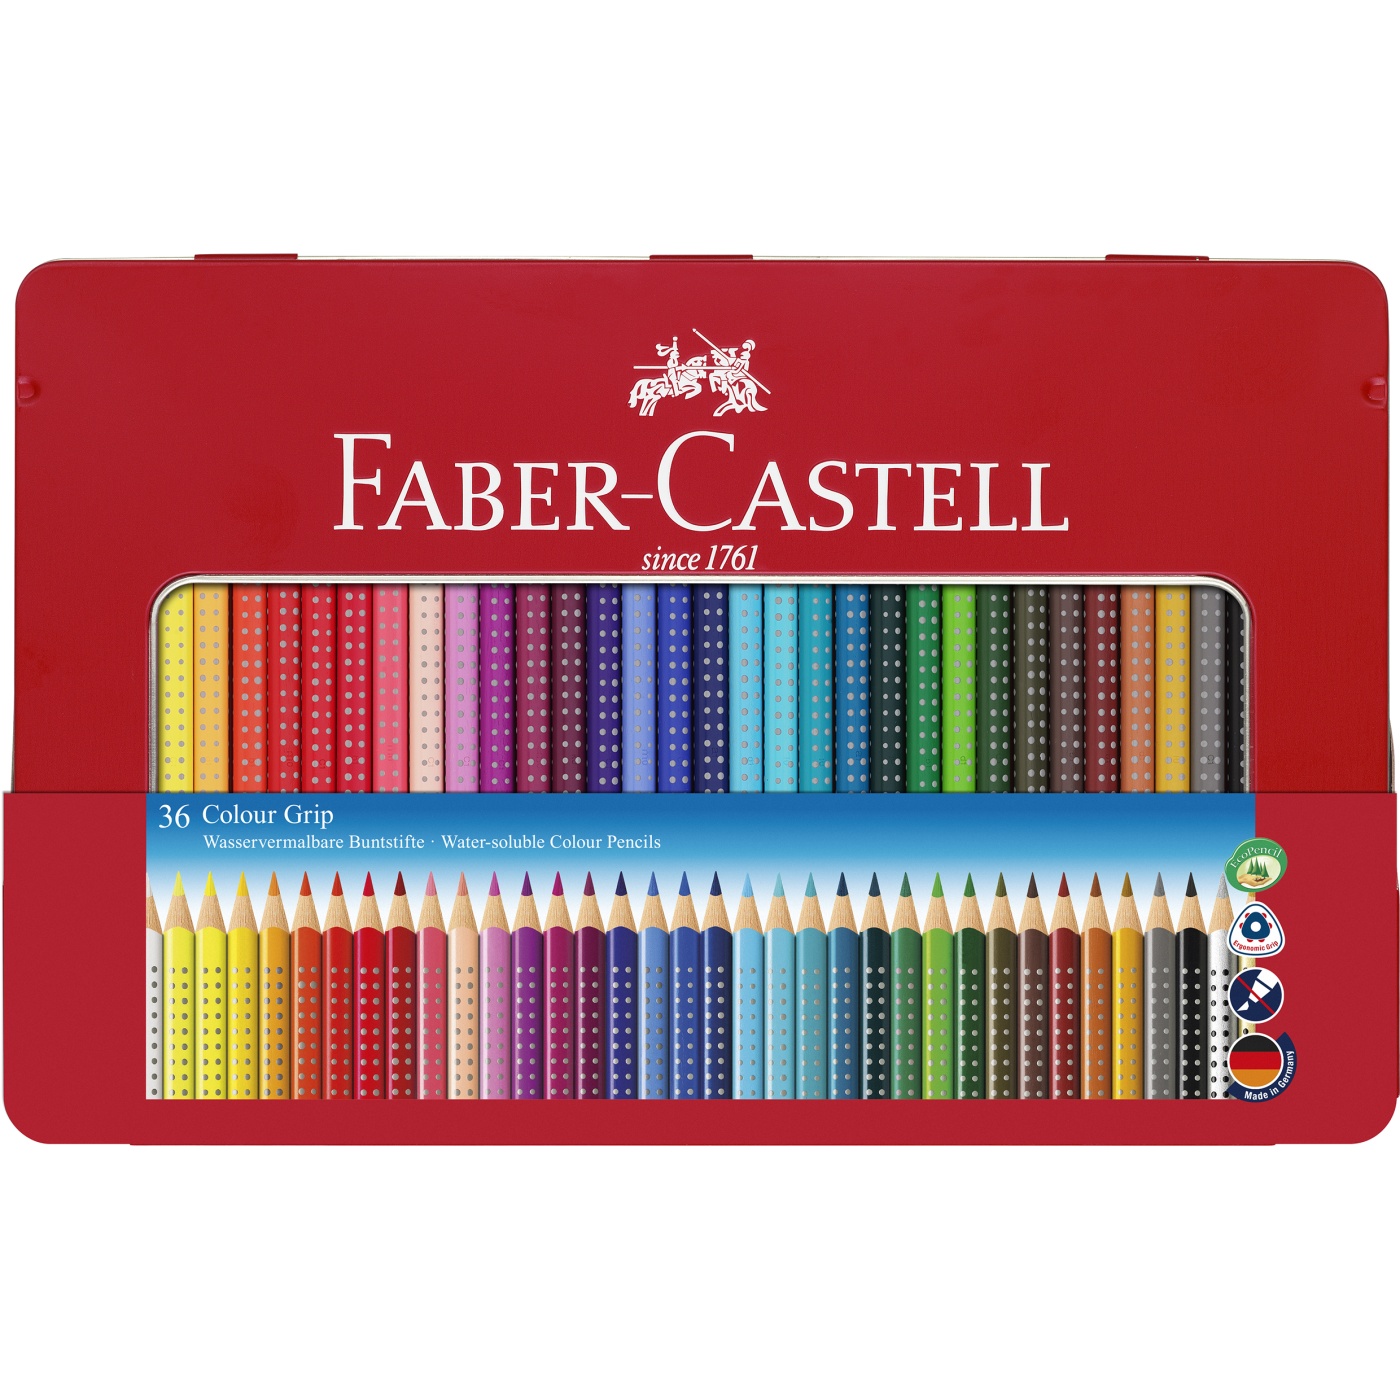 Faber-Castell - 18 + 4 crayons de couleur + 2 crayons graphite